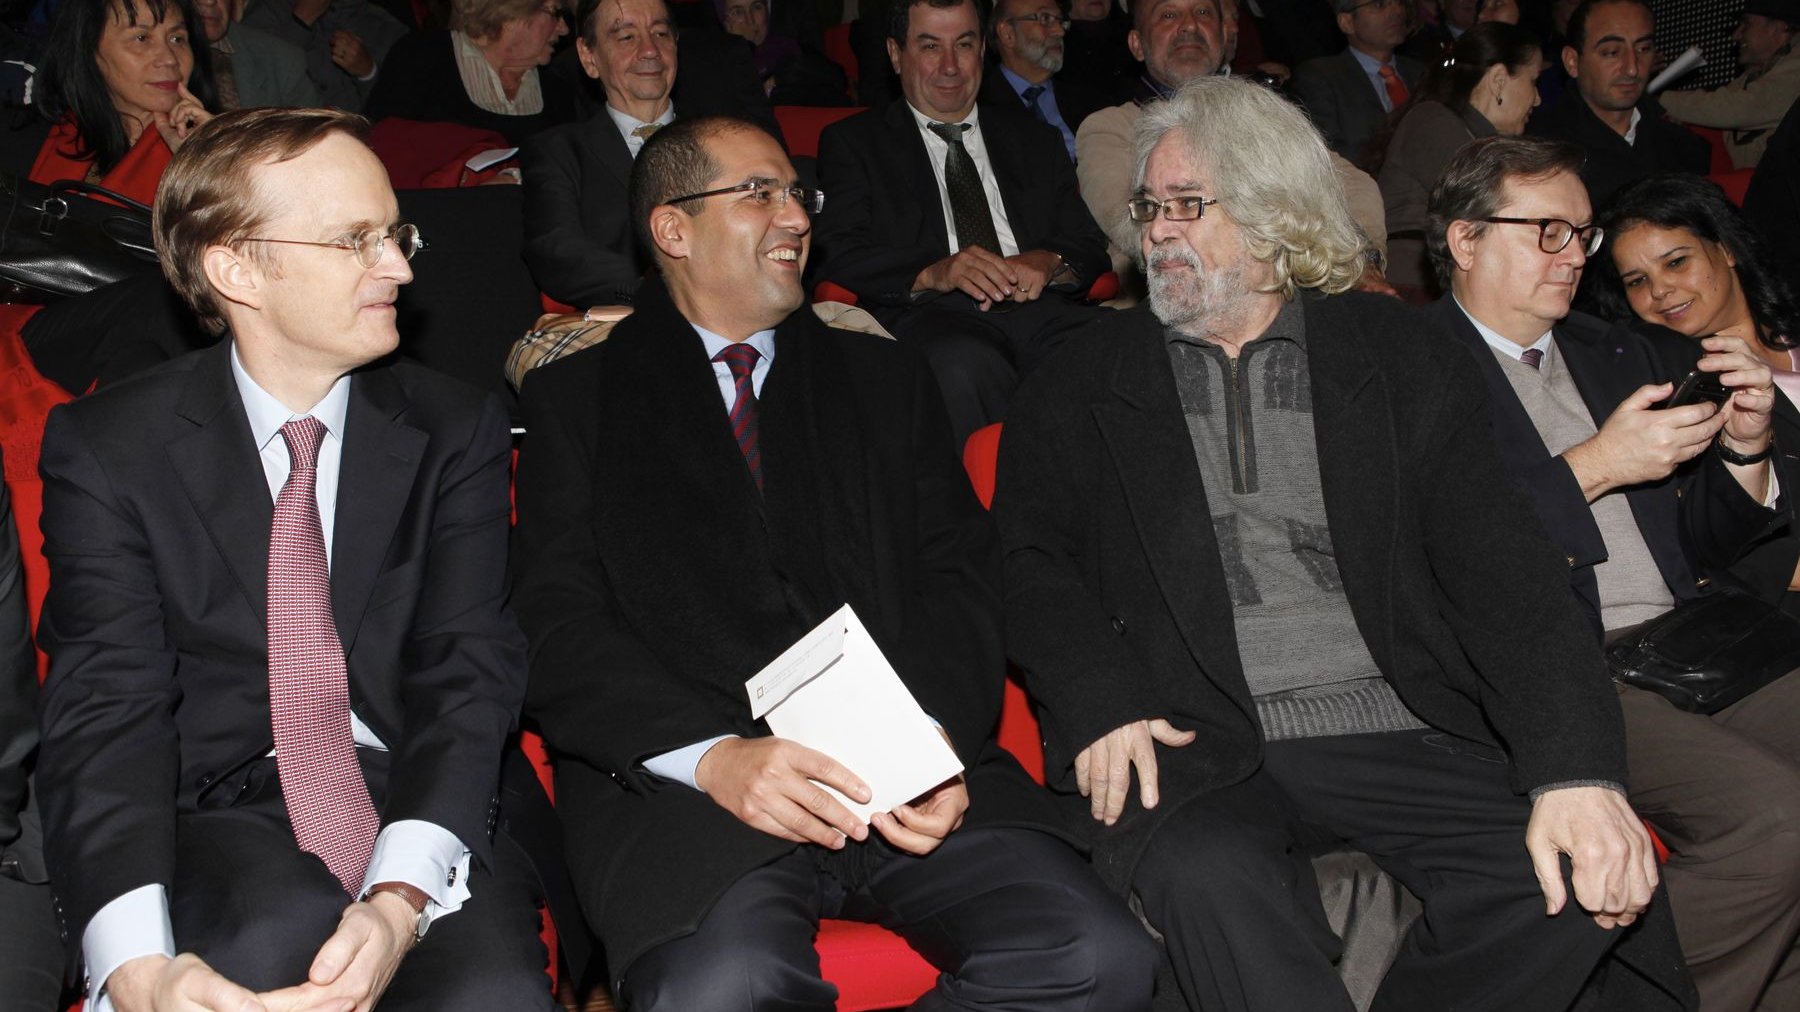 Charles Fries, ambassadeur de France au Maroc, et Khalid Safir, Wali de Casablanca, invités de marque de cet anniversaire aux côtés du grand dramaturge marocain Tayeb Seddiki.
